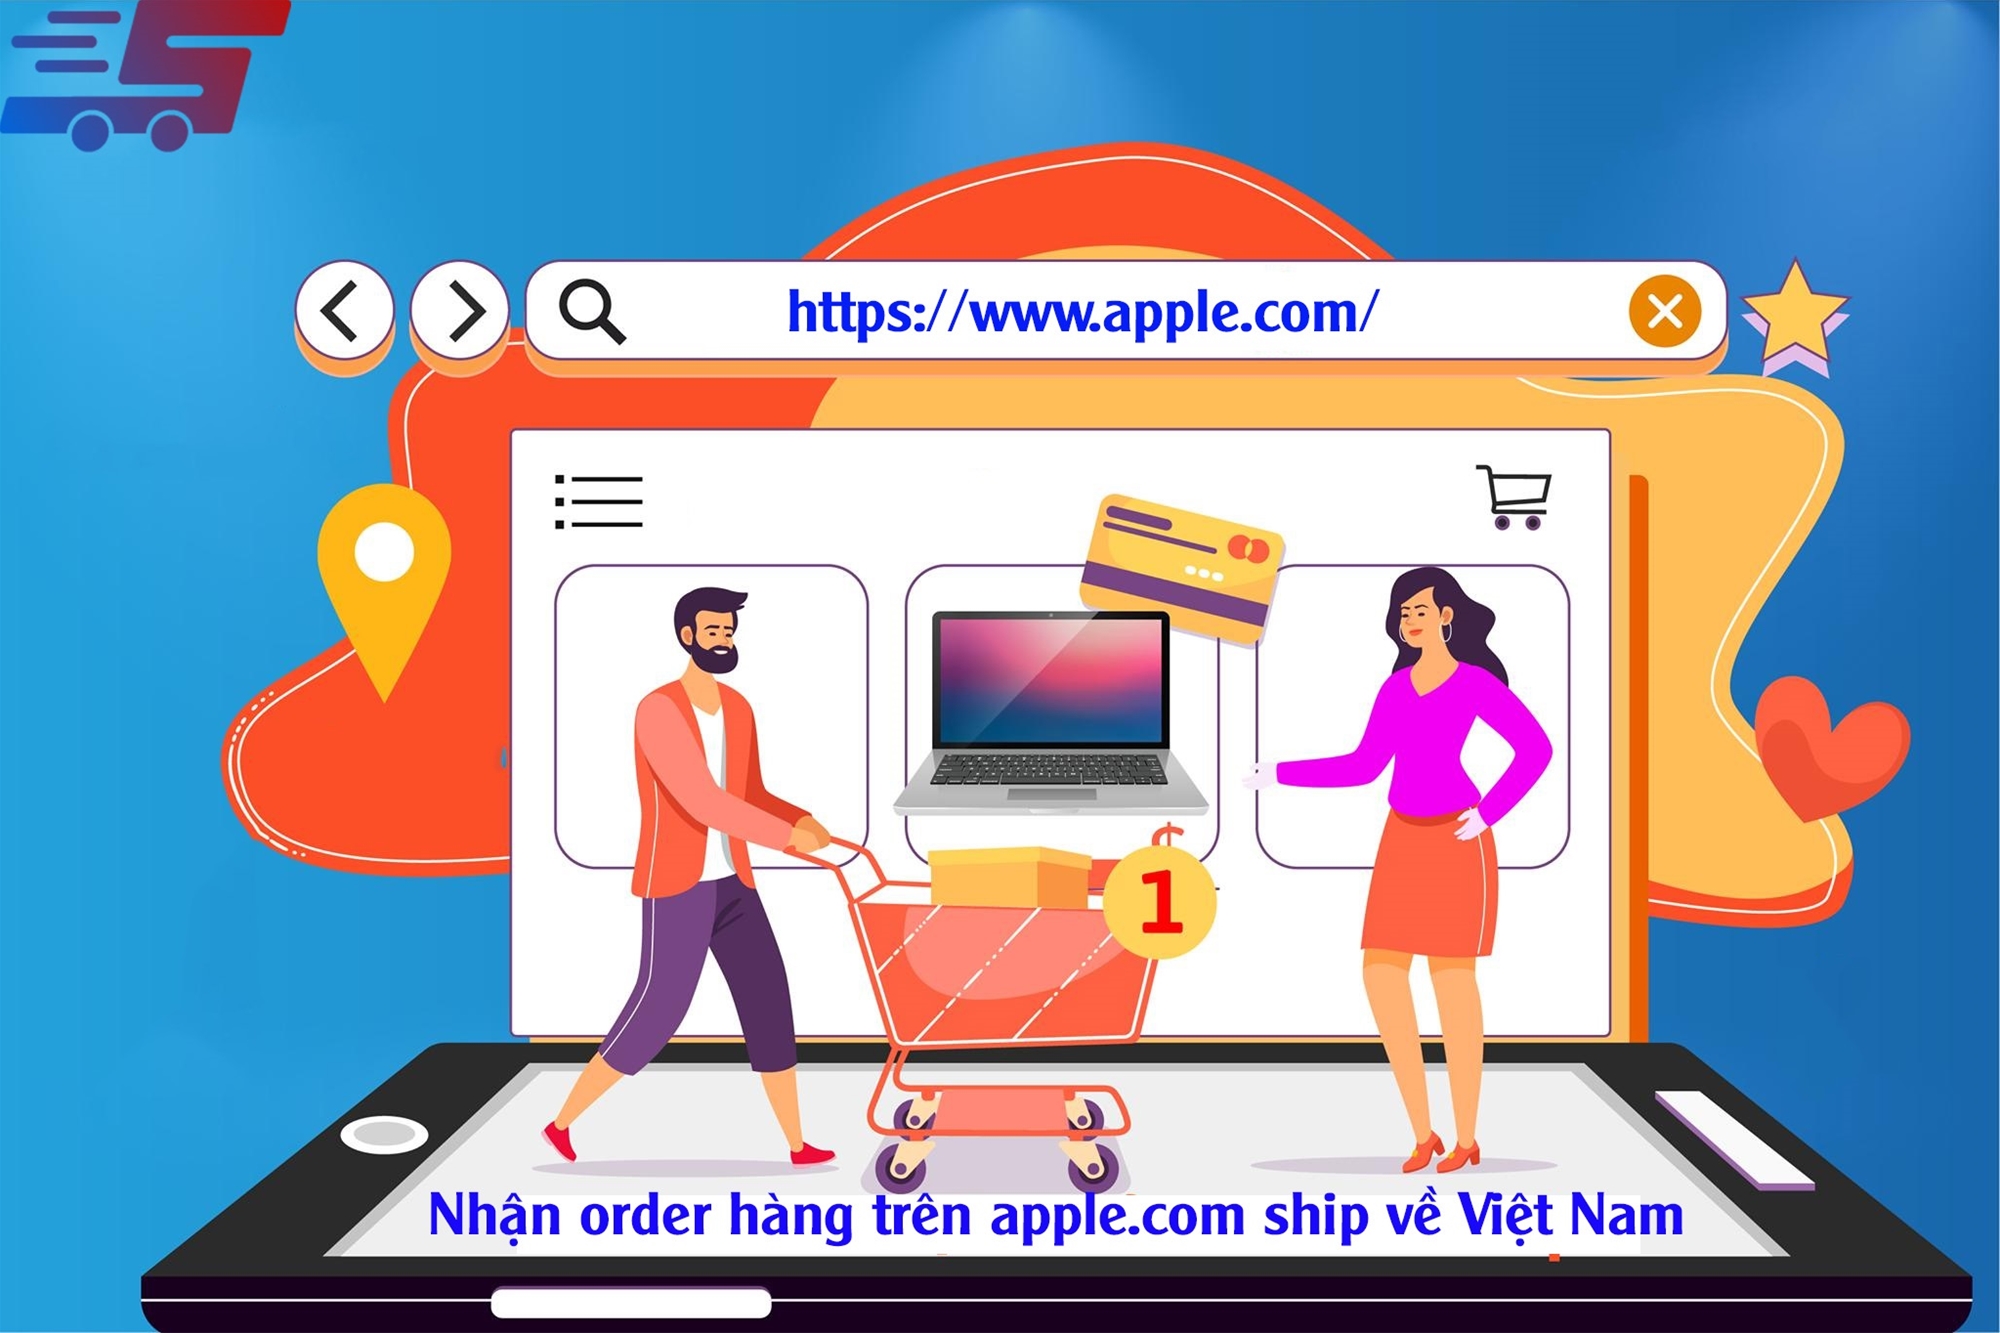 Nhận order hàng trên Apple.com ship về Việt Nam nhanh chóng